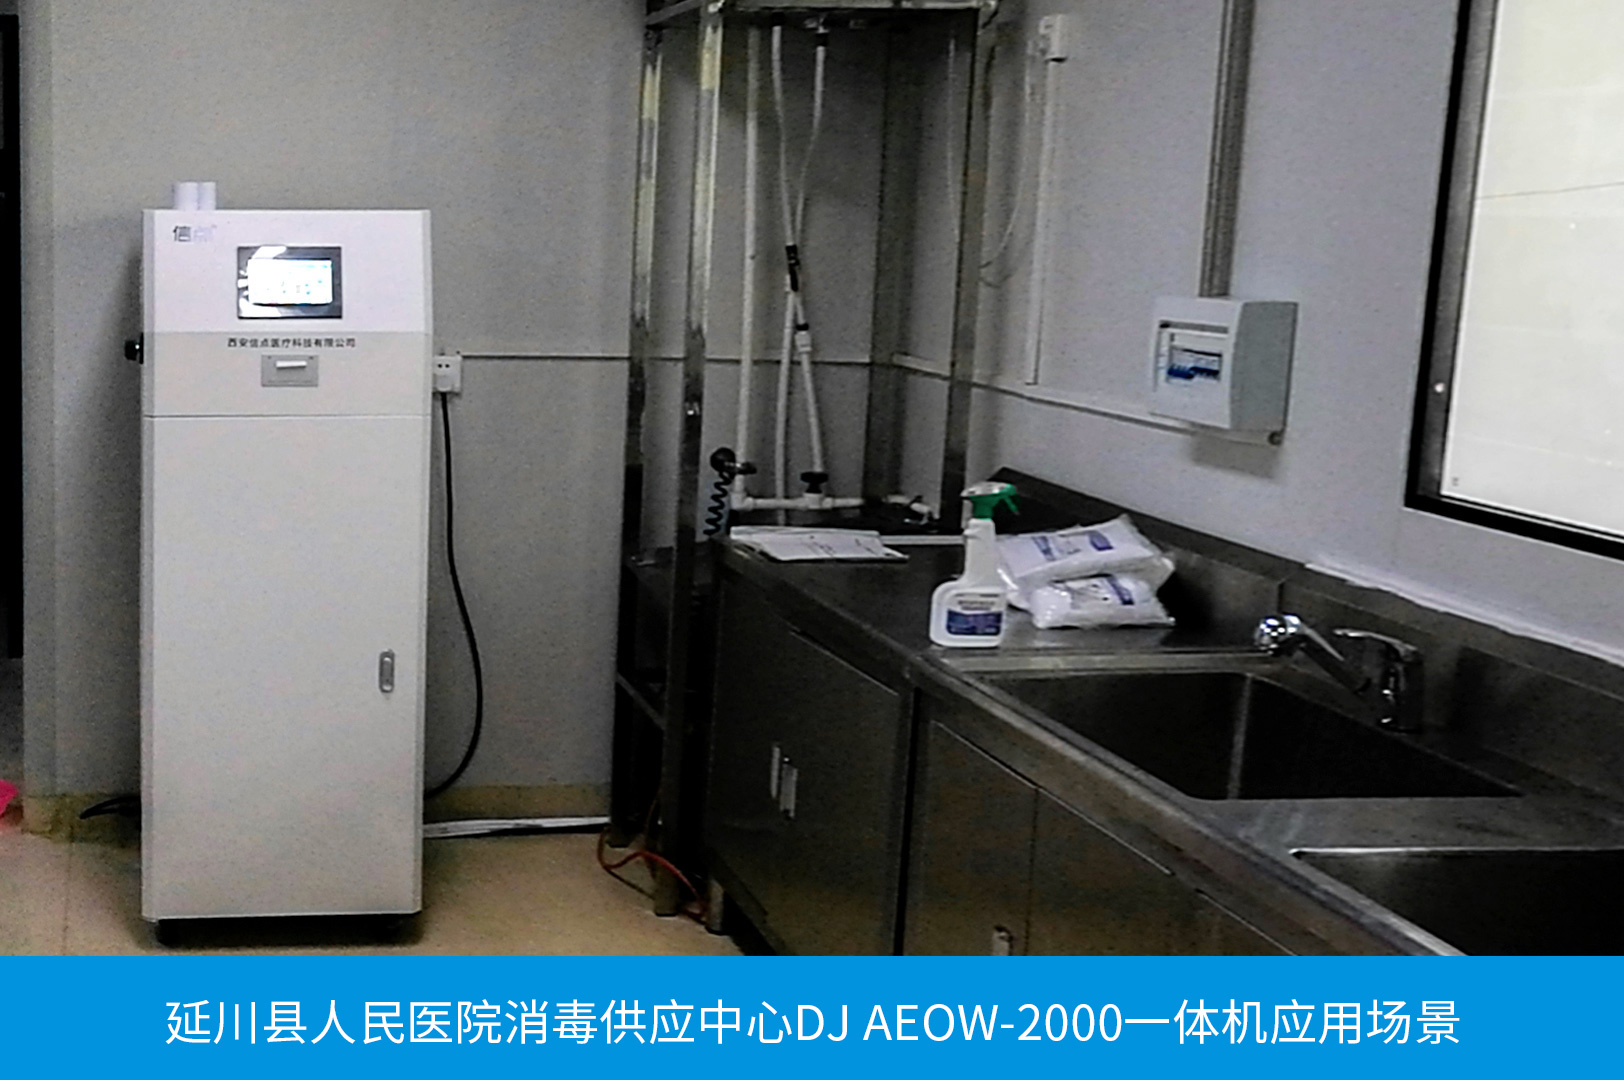 信點醫用DJ AEOW-2000一體酸化水機(圖2)